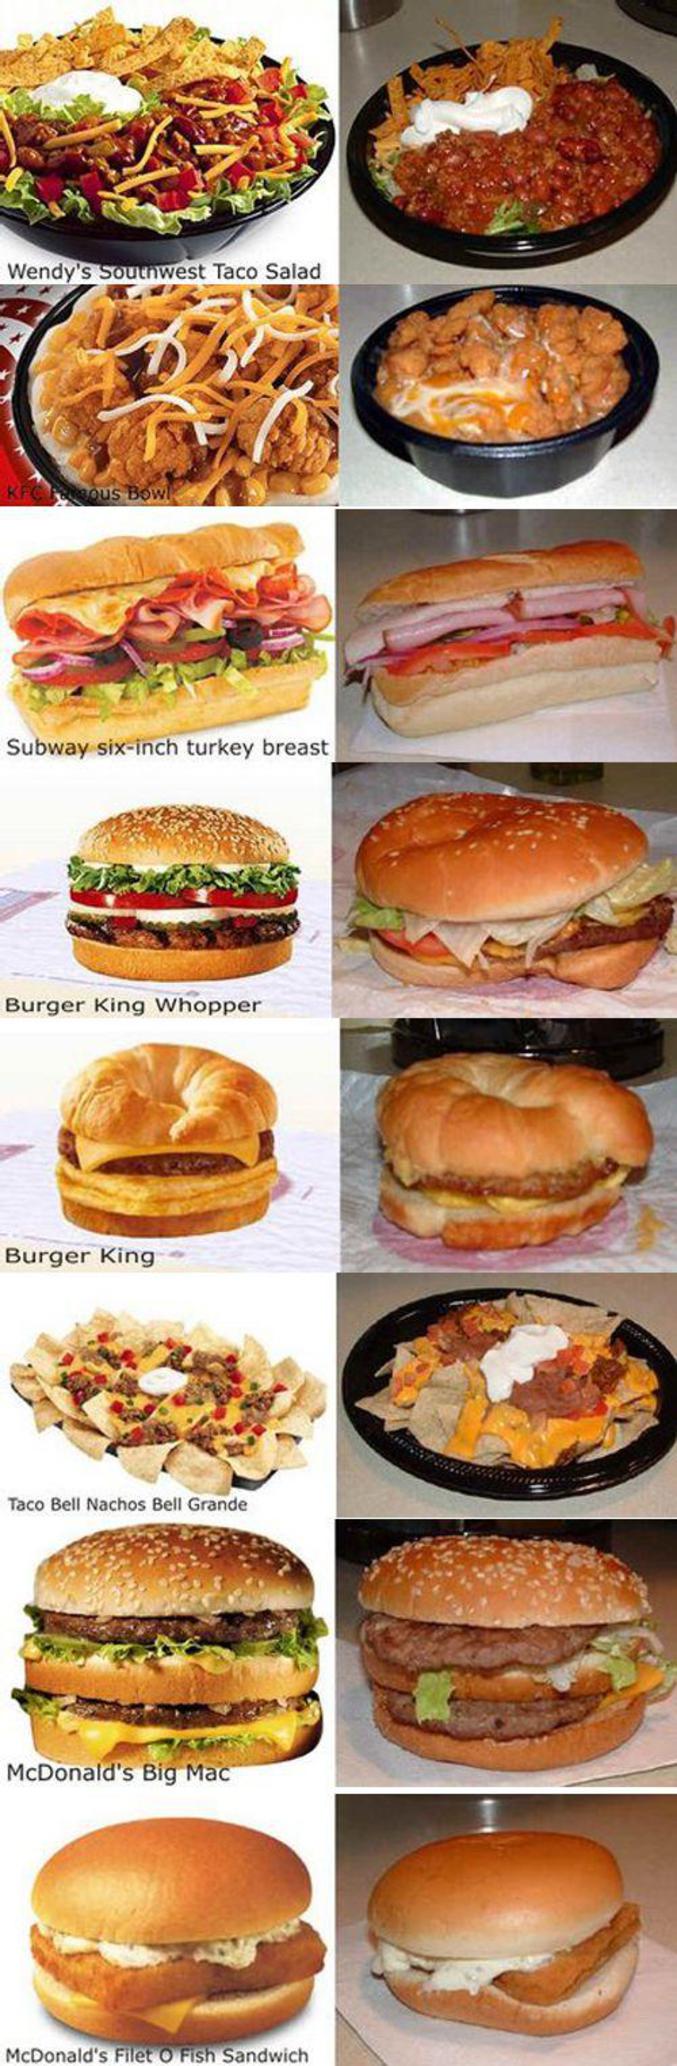 La différence entre les photos d'annonces de fast-foods et la réalité.